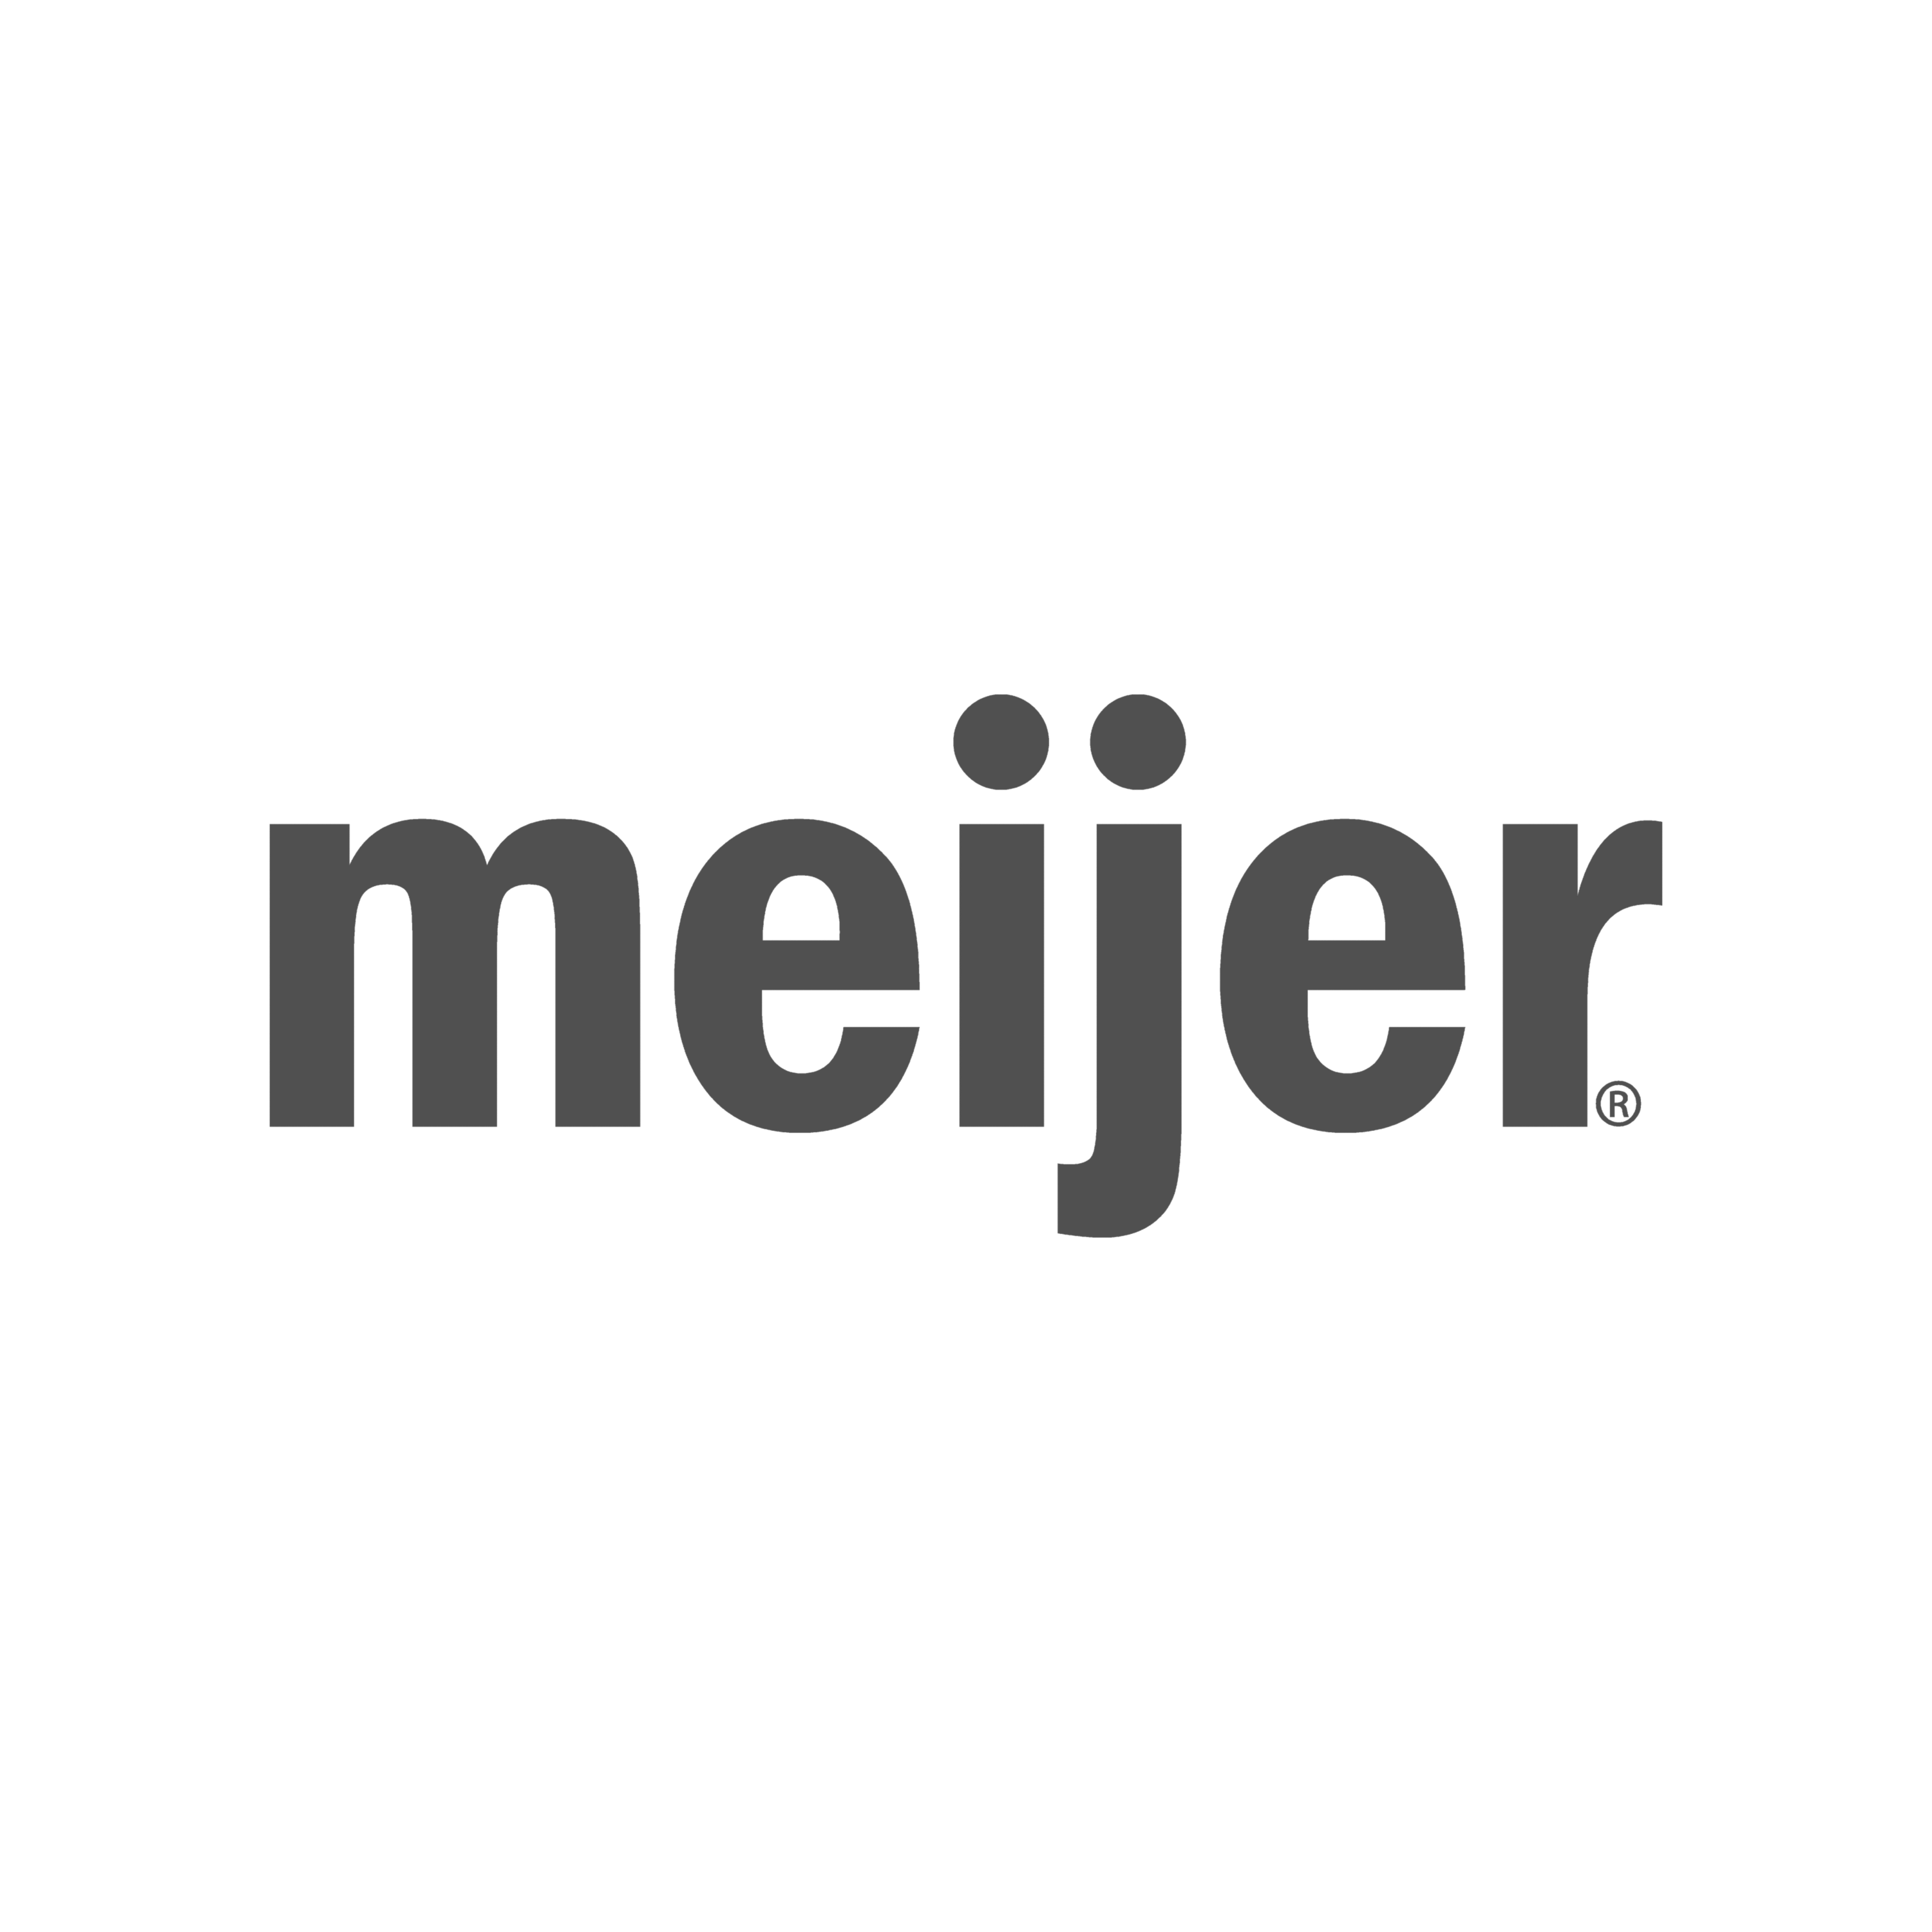 A meijer logo